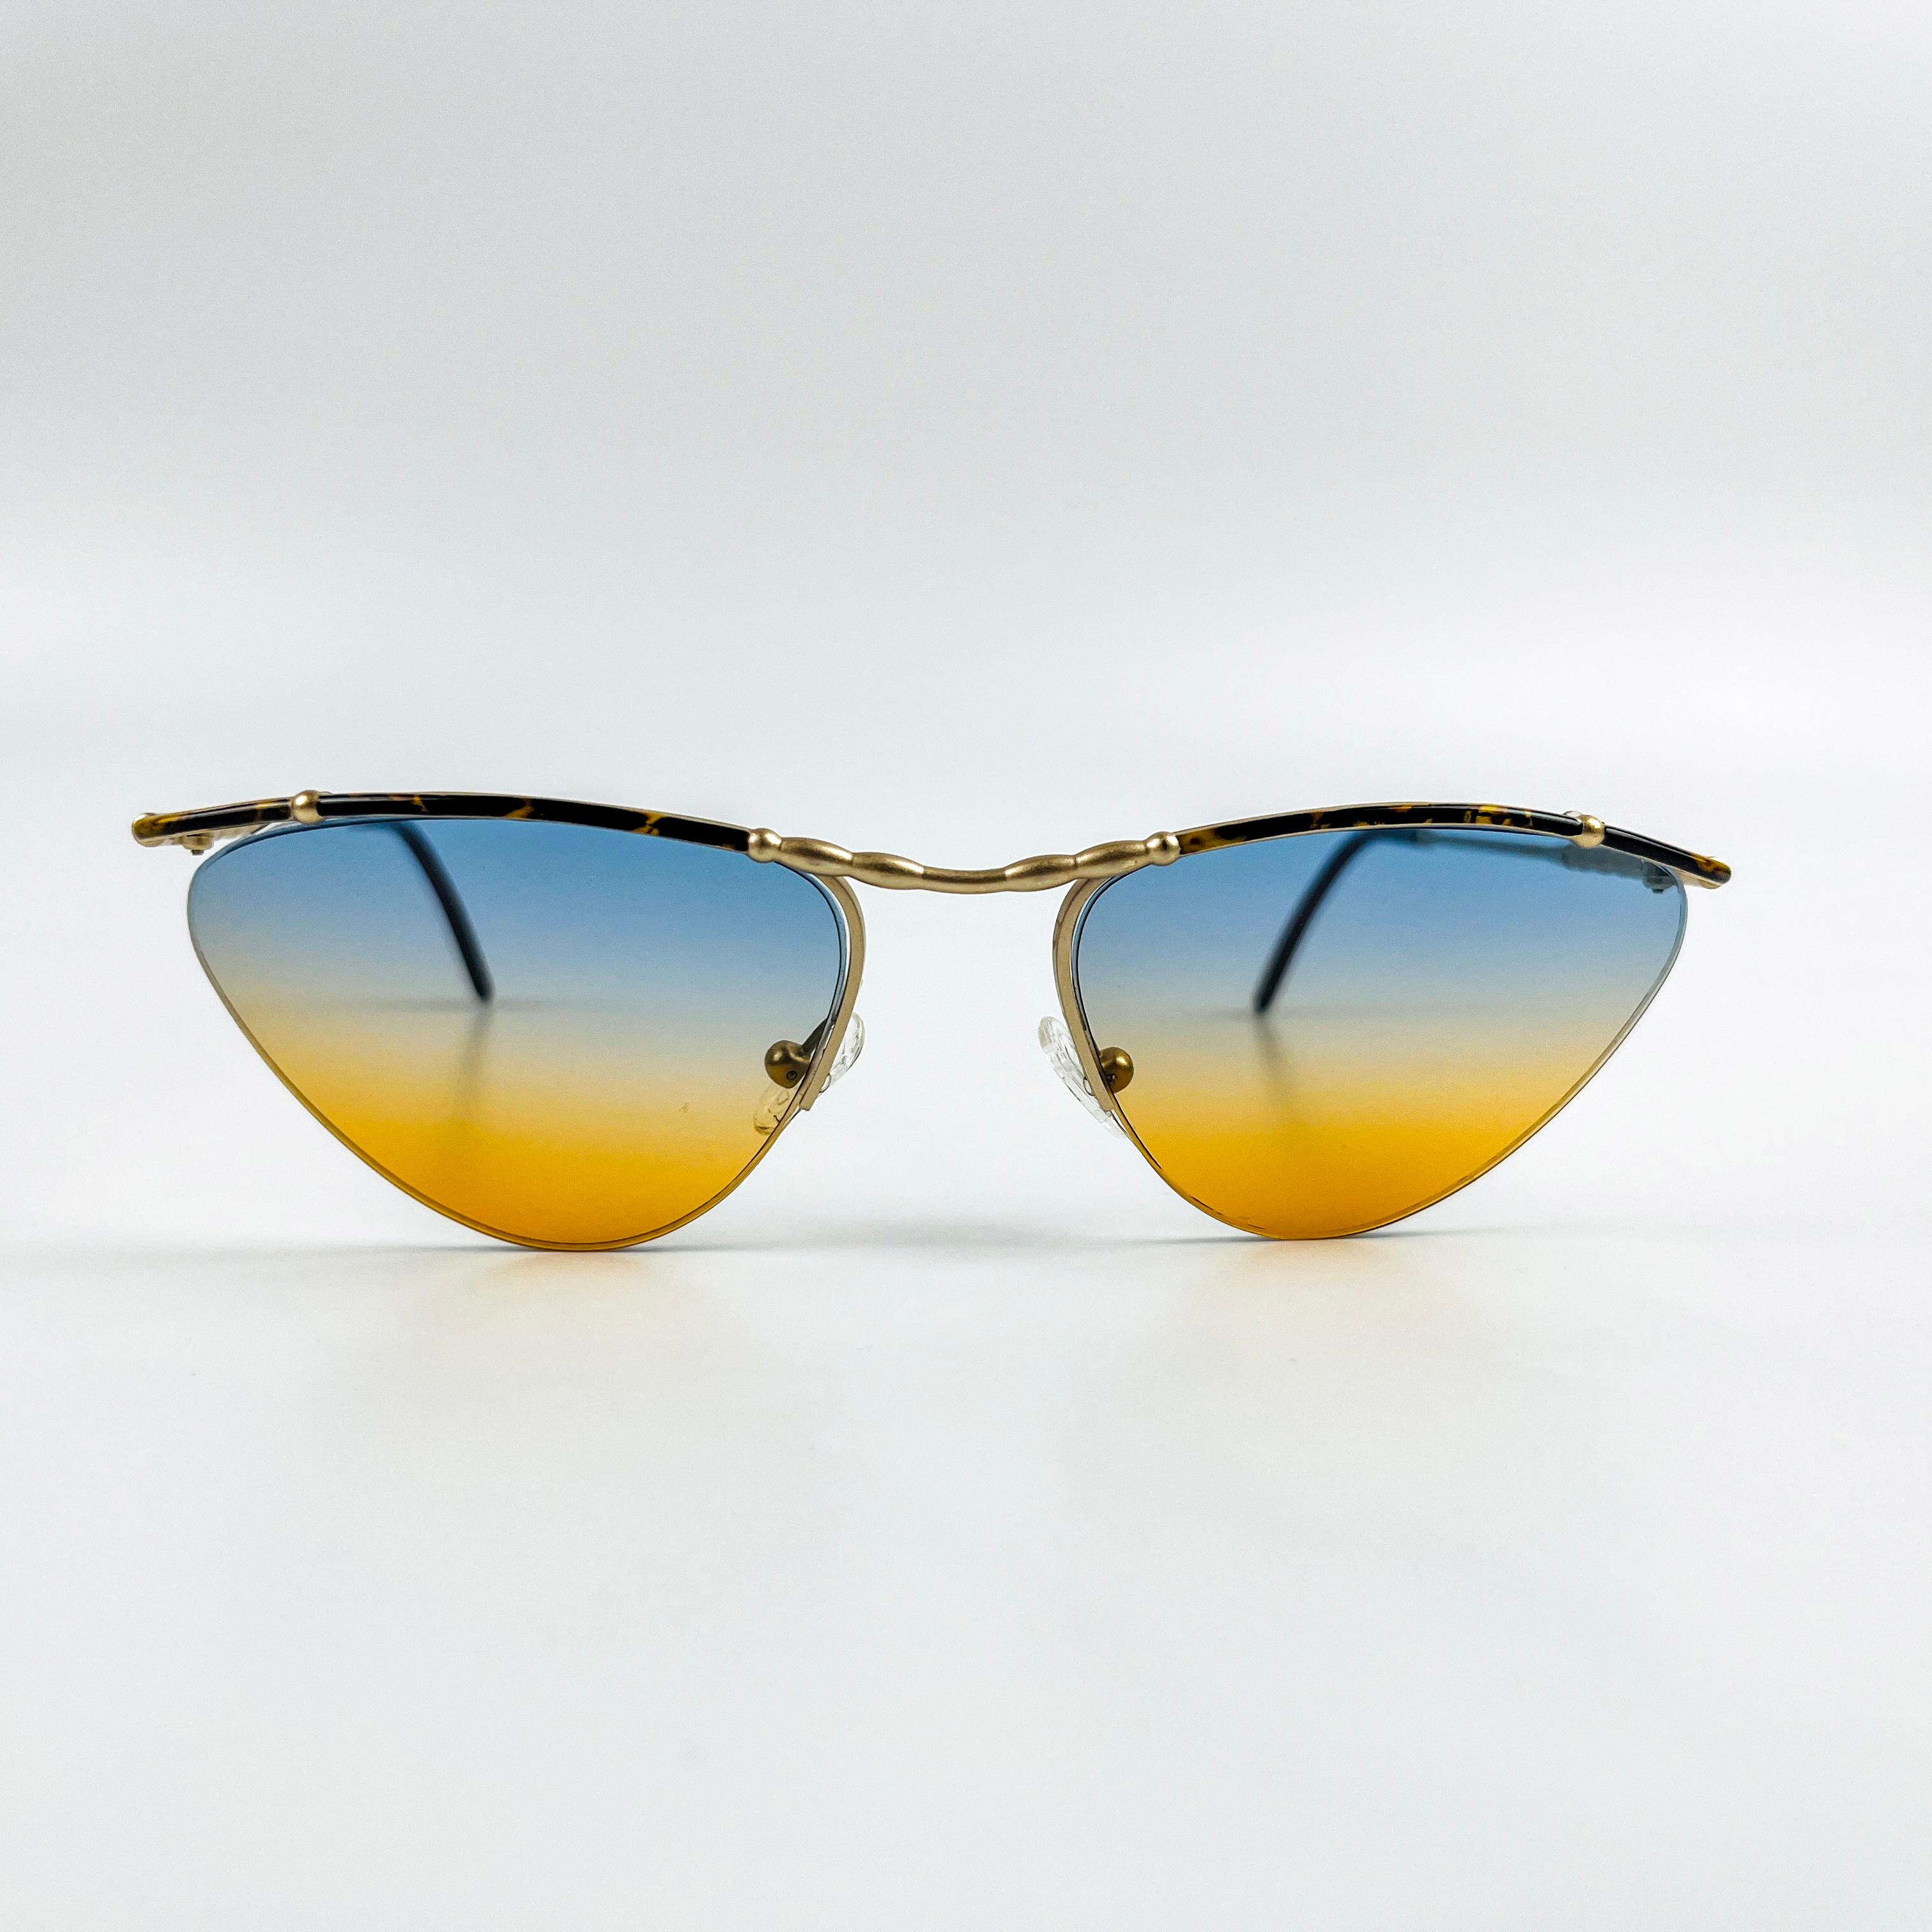  90's Glasse Metal Vintage Güneş Gözlüğü OSV200456